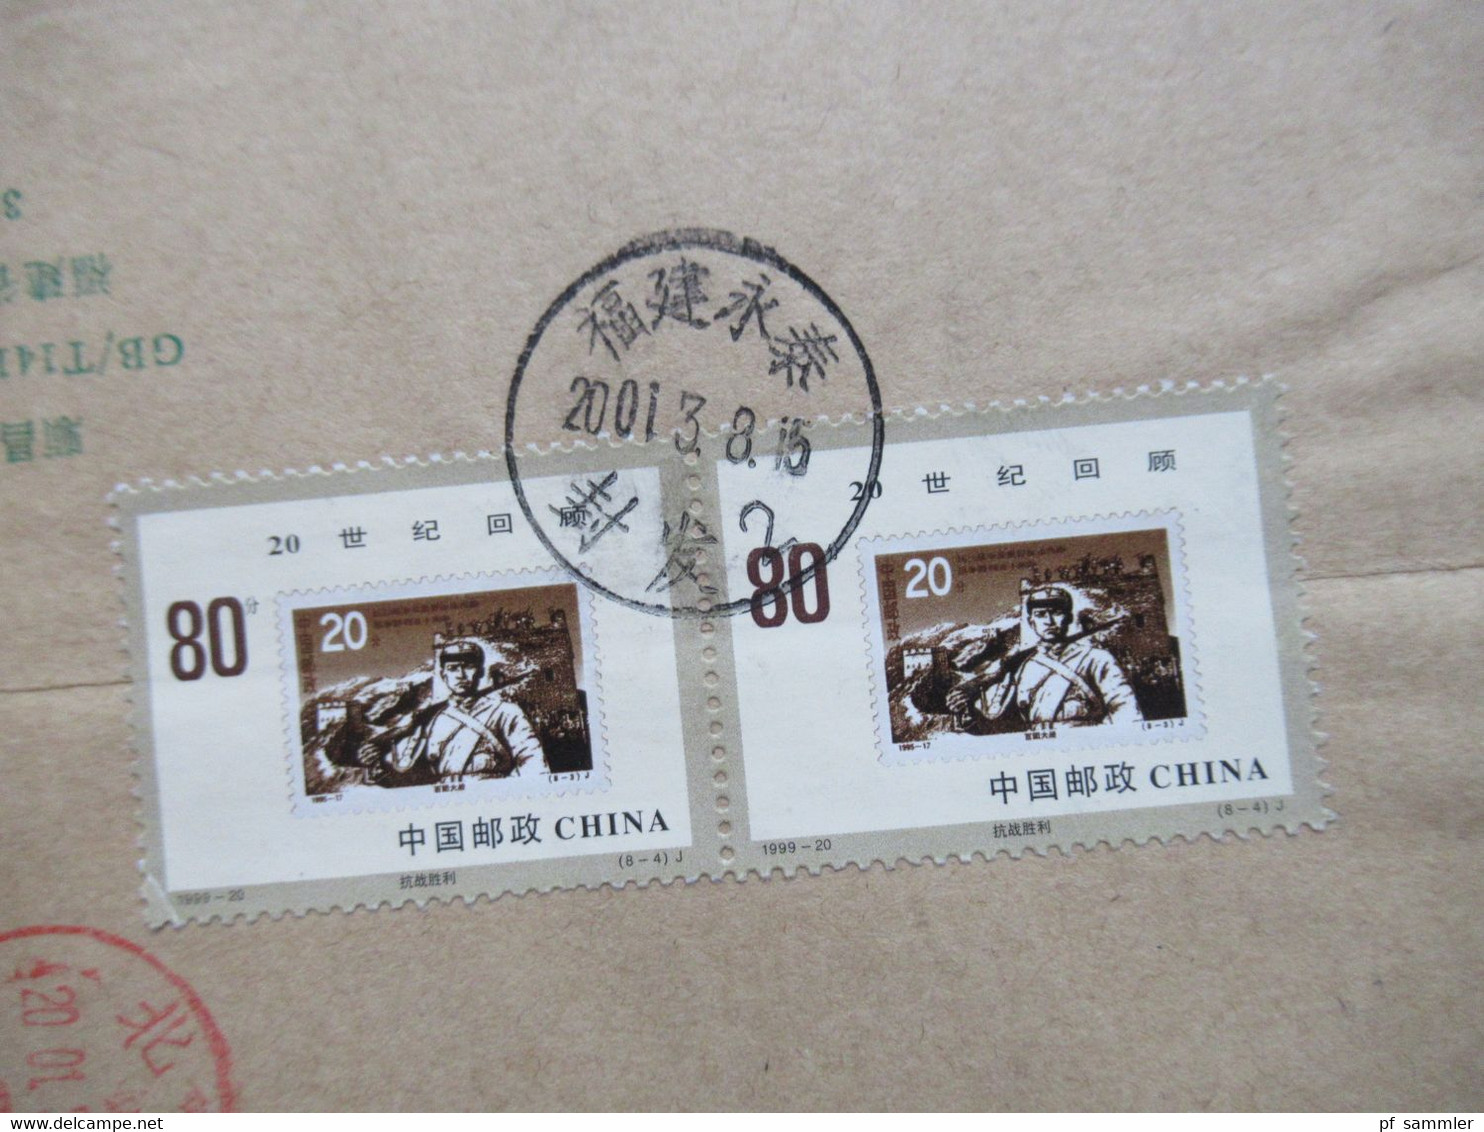 VR China 1999 Rückblick auf das 20. Jahrhundert / Sieg gegen Japan Nr. 3104 (2) MeF / vorgedruckter Umschlag